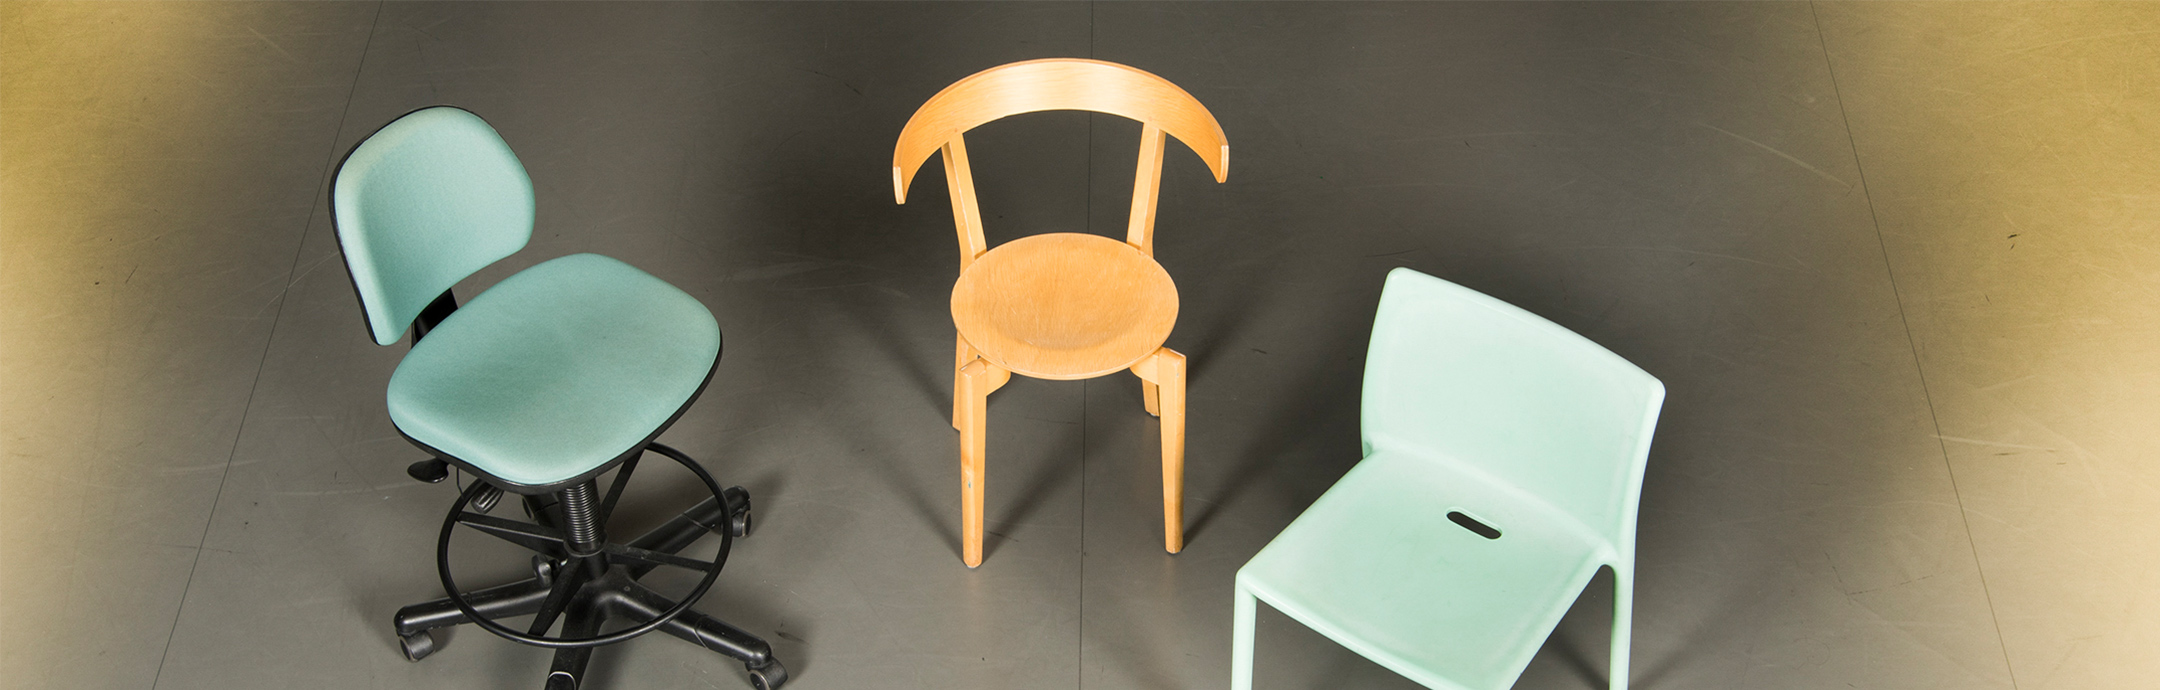 Tre olika stolar – skrivbordsstol, trästol och plaststol.